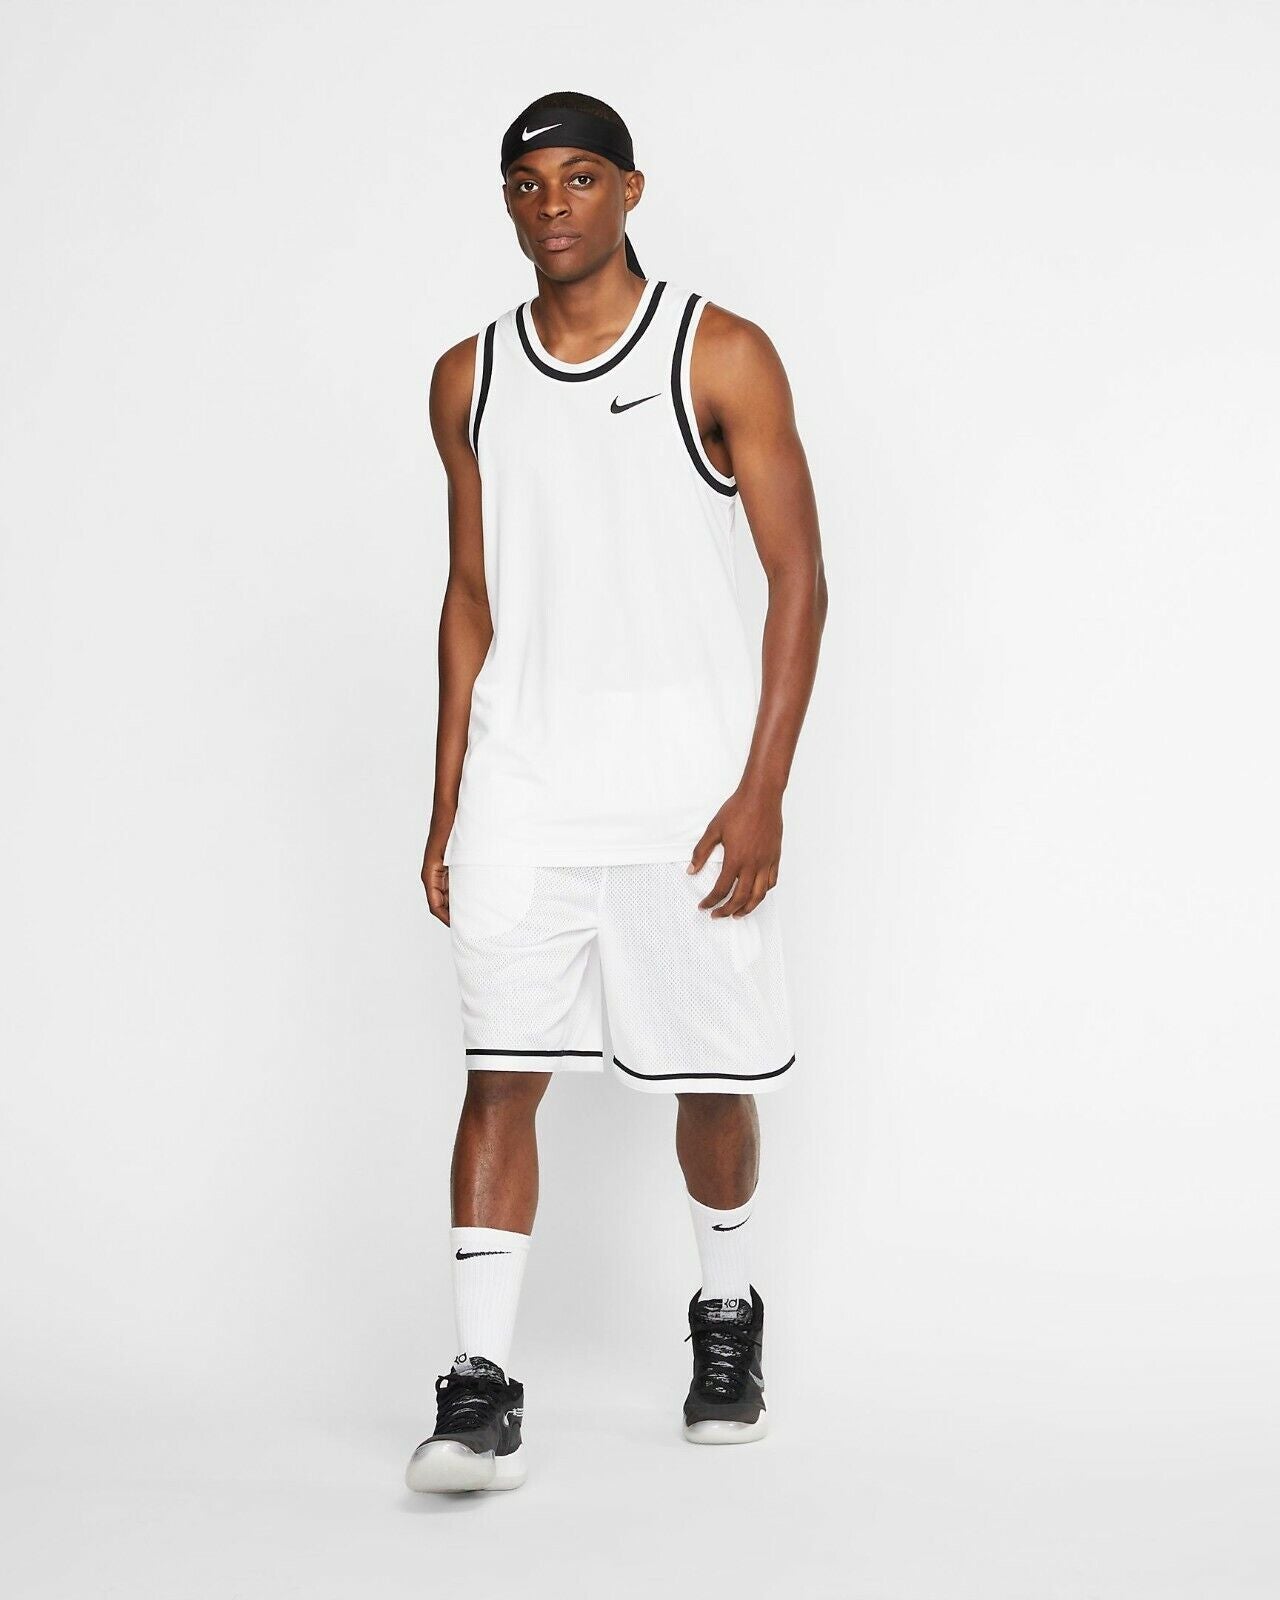 Men's Nike Dri-FIT Classic Basketball Shorts, AQ5600 100 Multi Sizes White/Black